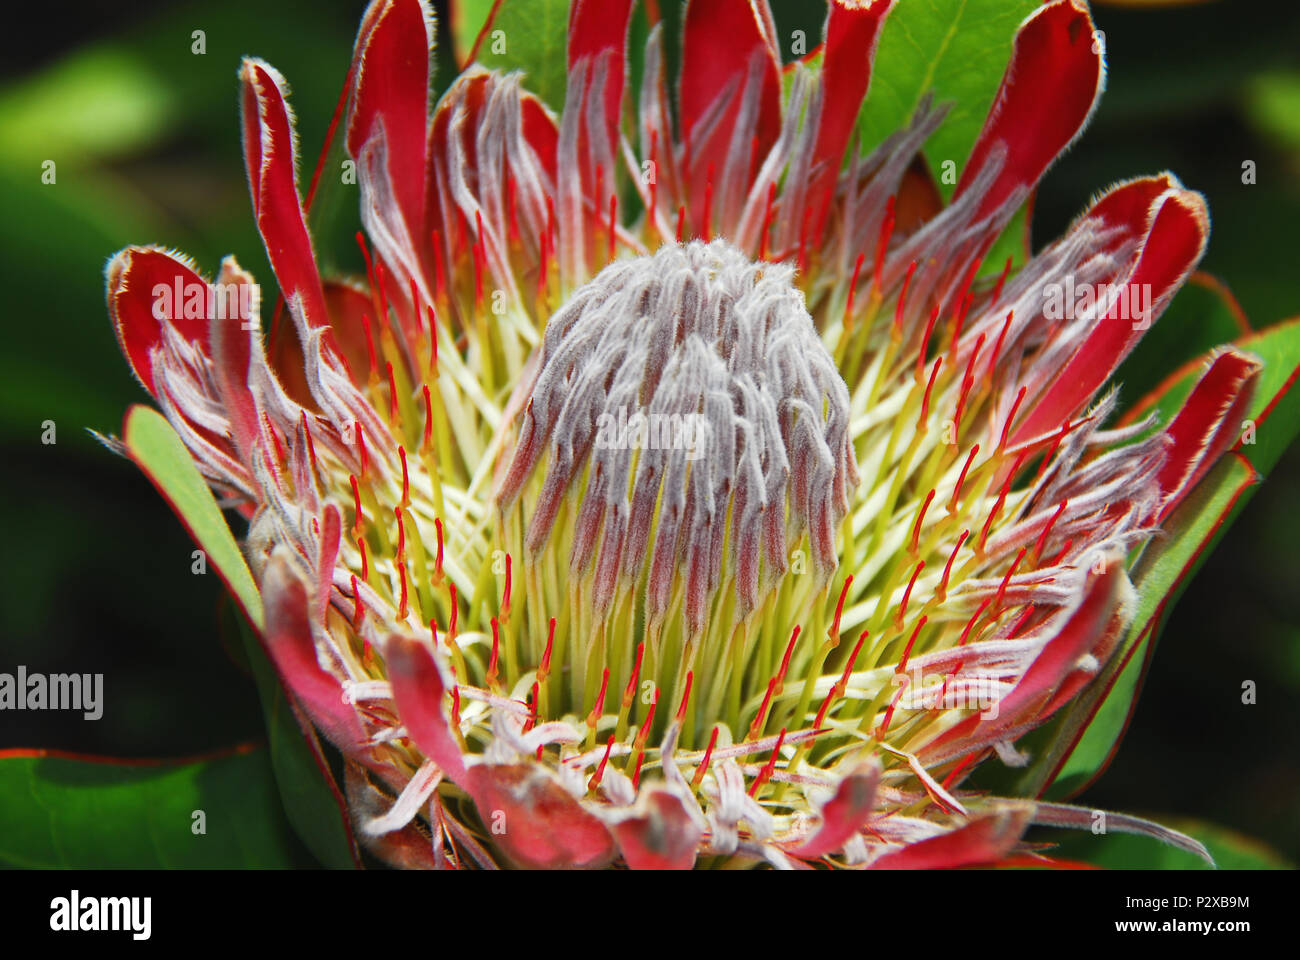 Protea Fynbos sind seltene exotische, großen Blüten, die in Südafrika. Diese schöne Blüte ist ein schönes Beispiel für die komplexe Natur. Stockfoto